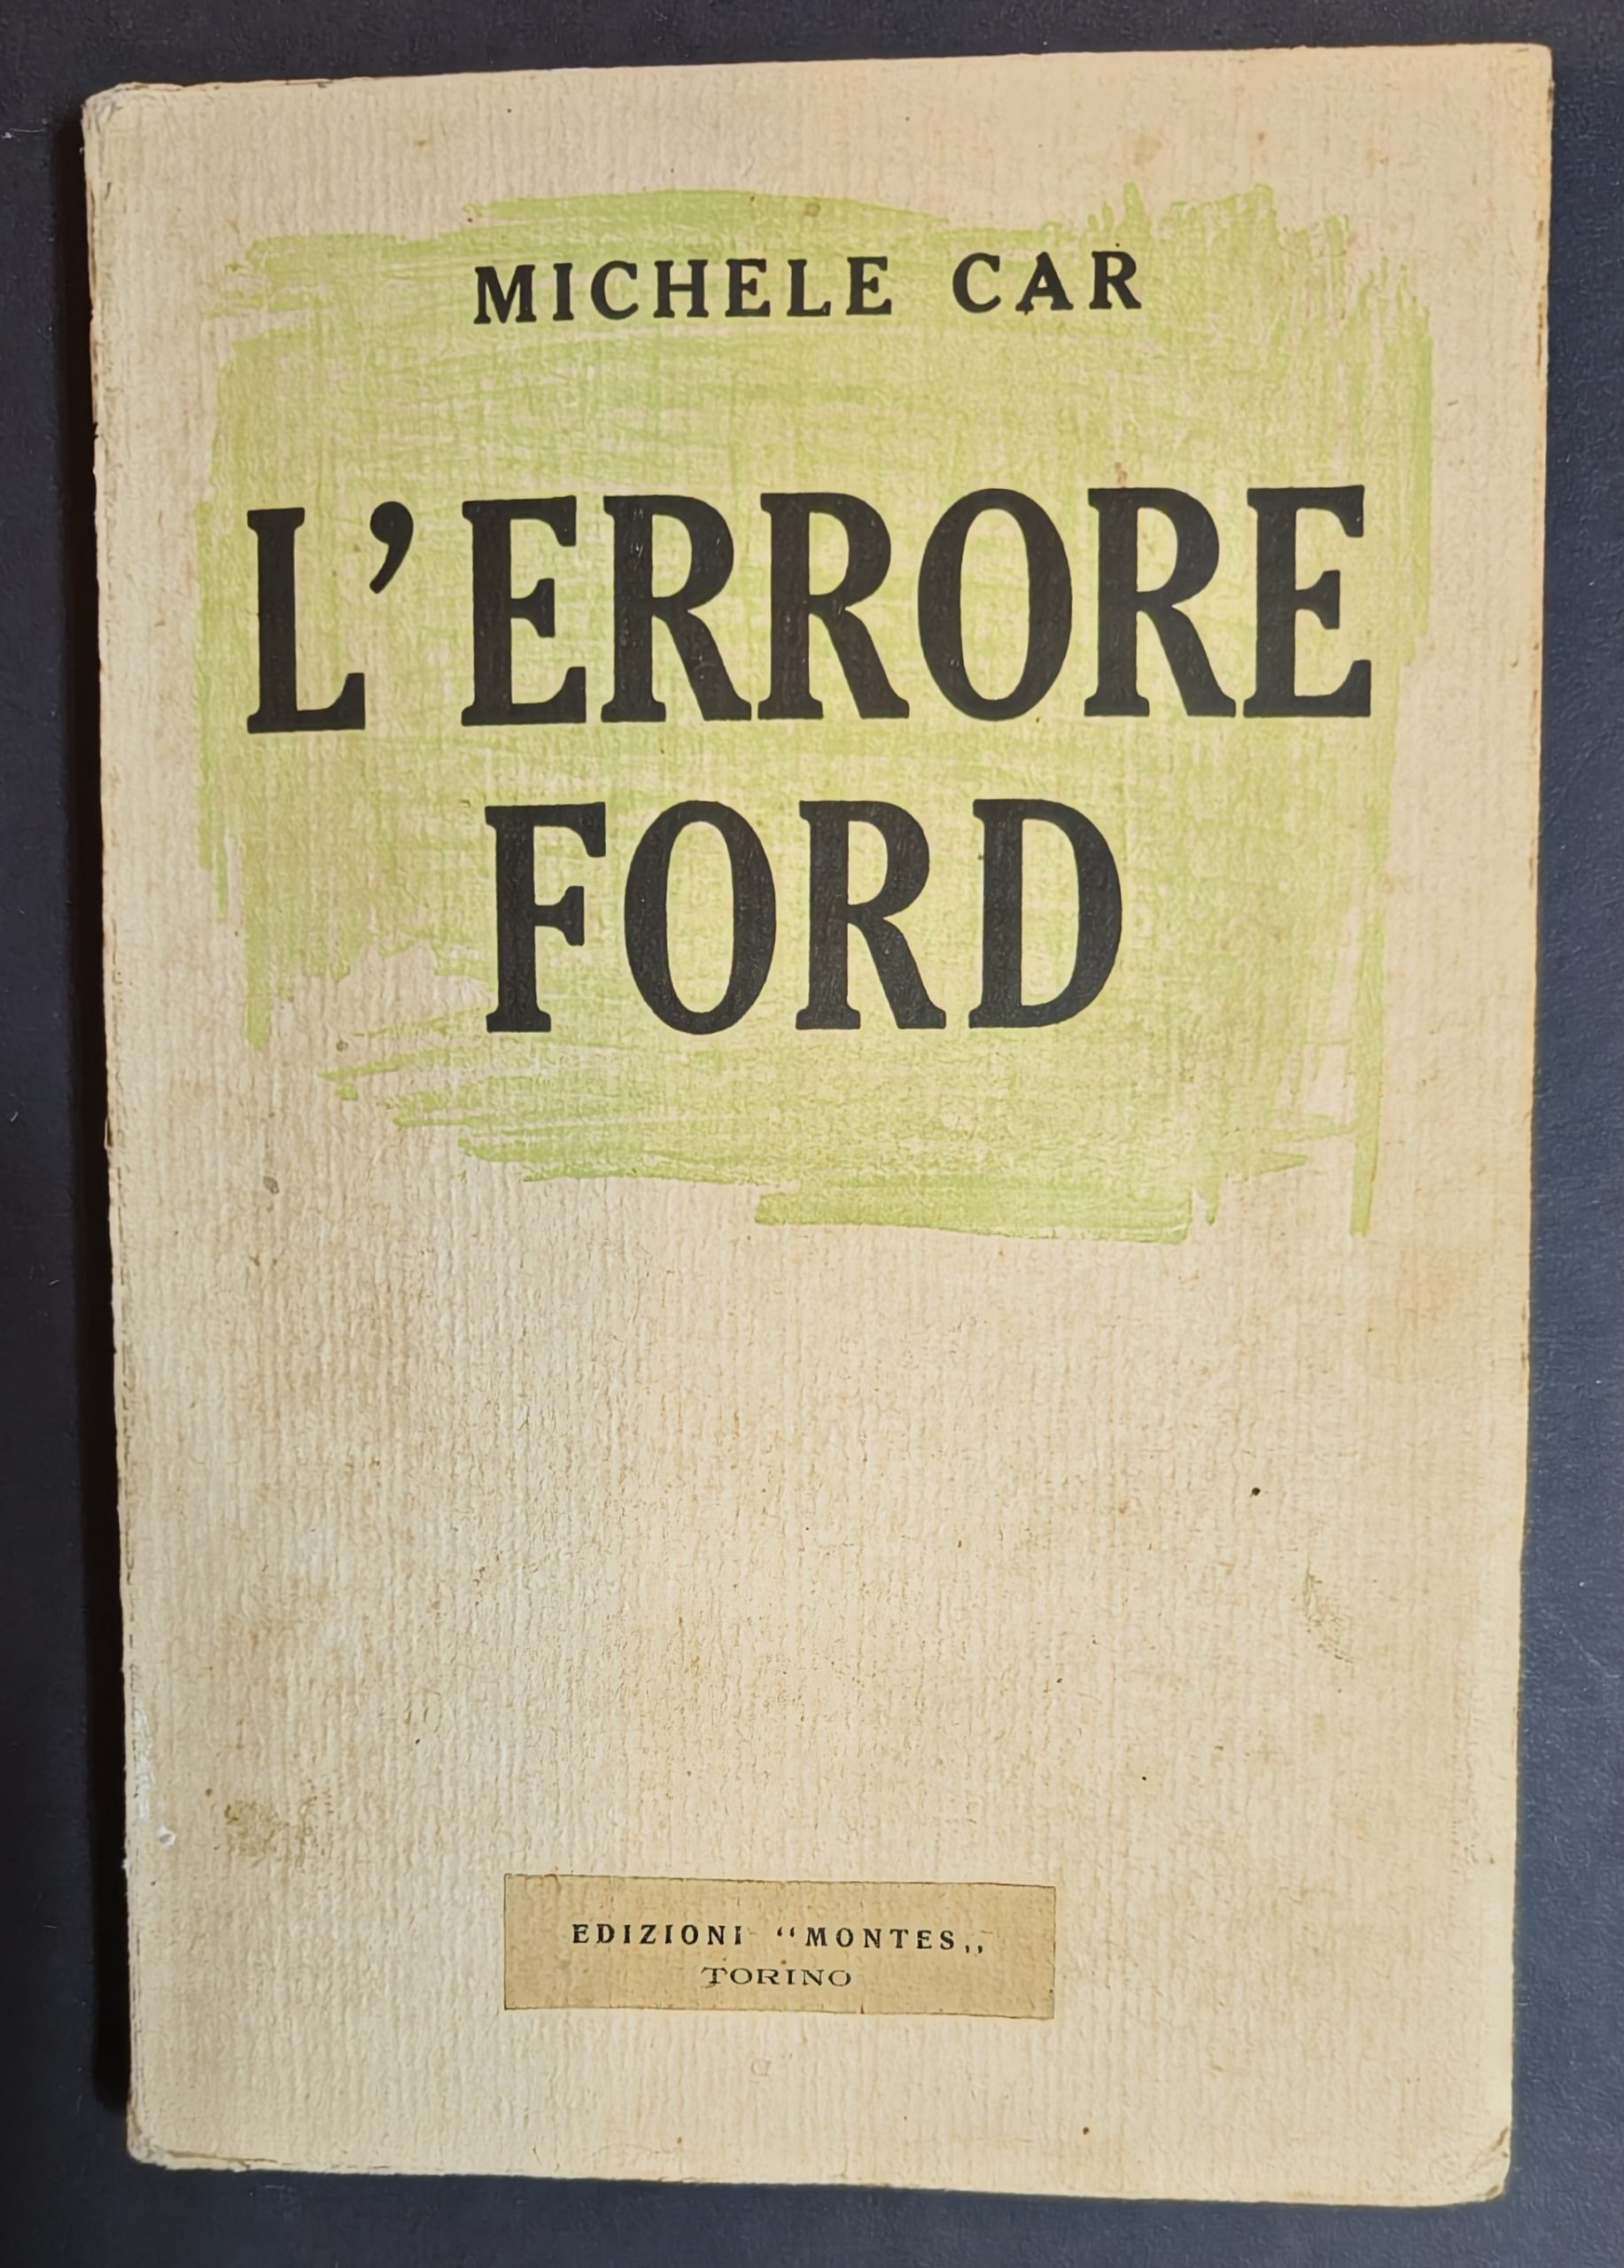 “L’errore Ford” (1932) di Michele Car: un’invettiva contro Henry Ford e il suo metodo imprenditoriale